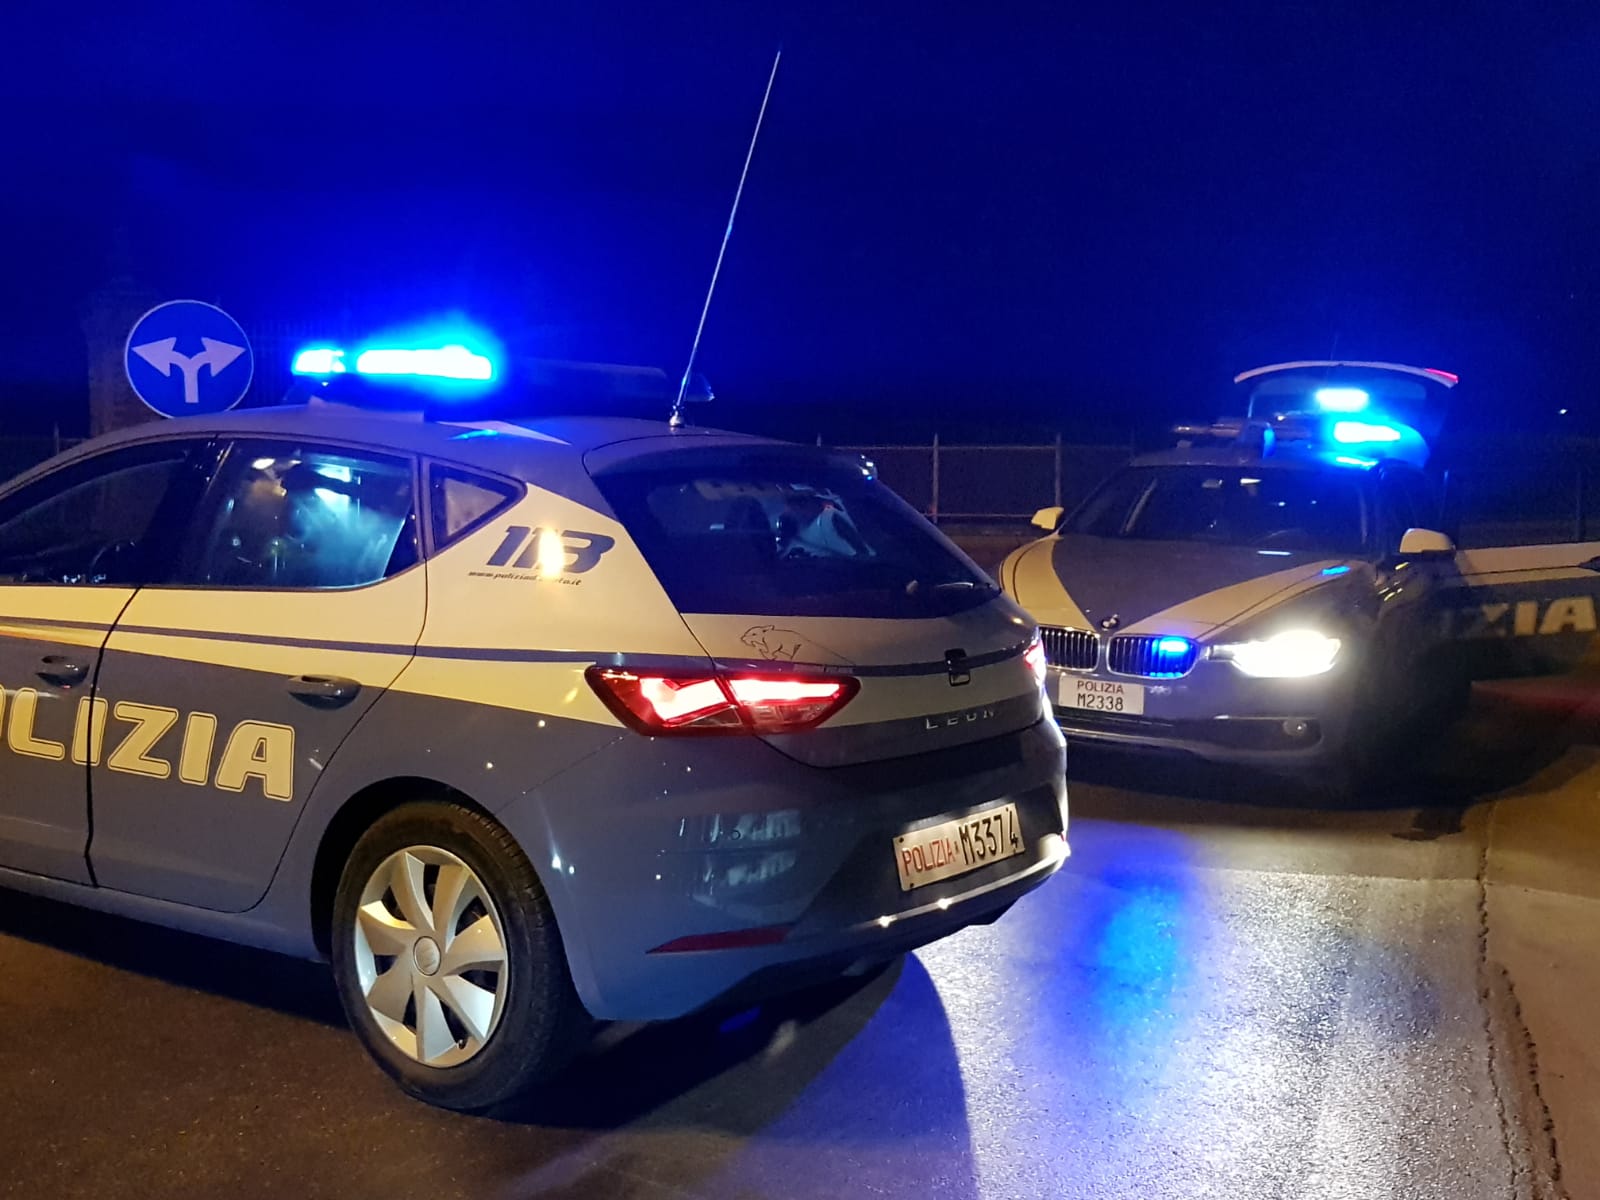 Monza e Brianza: la Polizia di Stato esegue 4 provvedimenti di fermo per rapine seriali a mano armata tra Monza e Milano